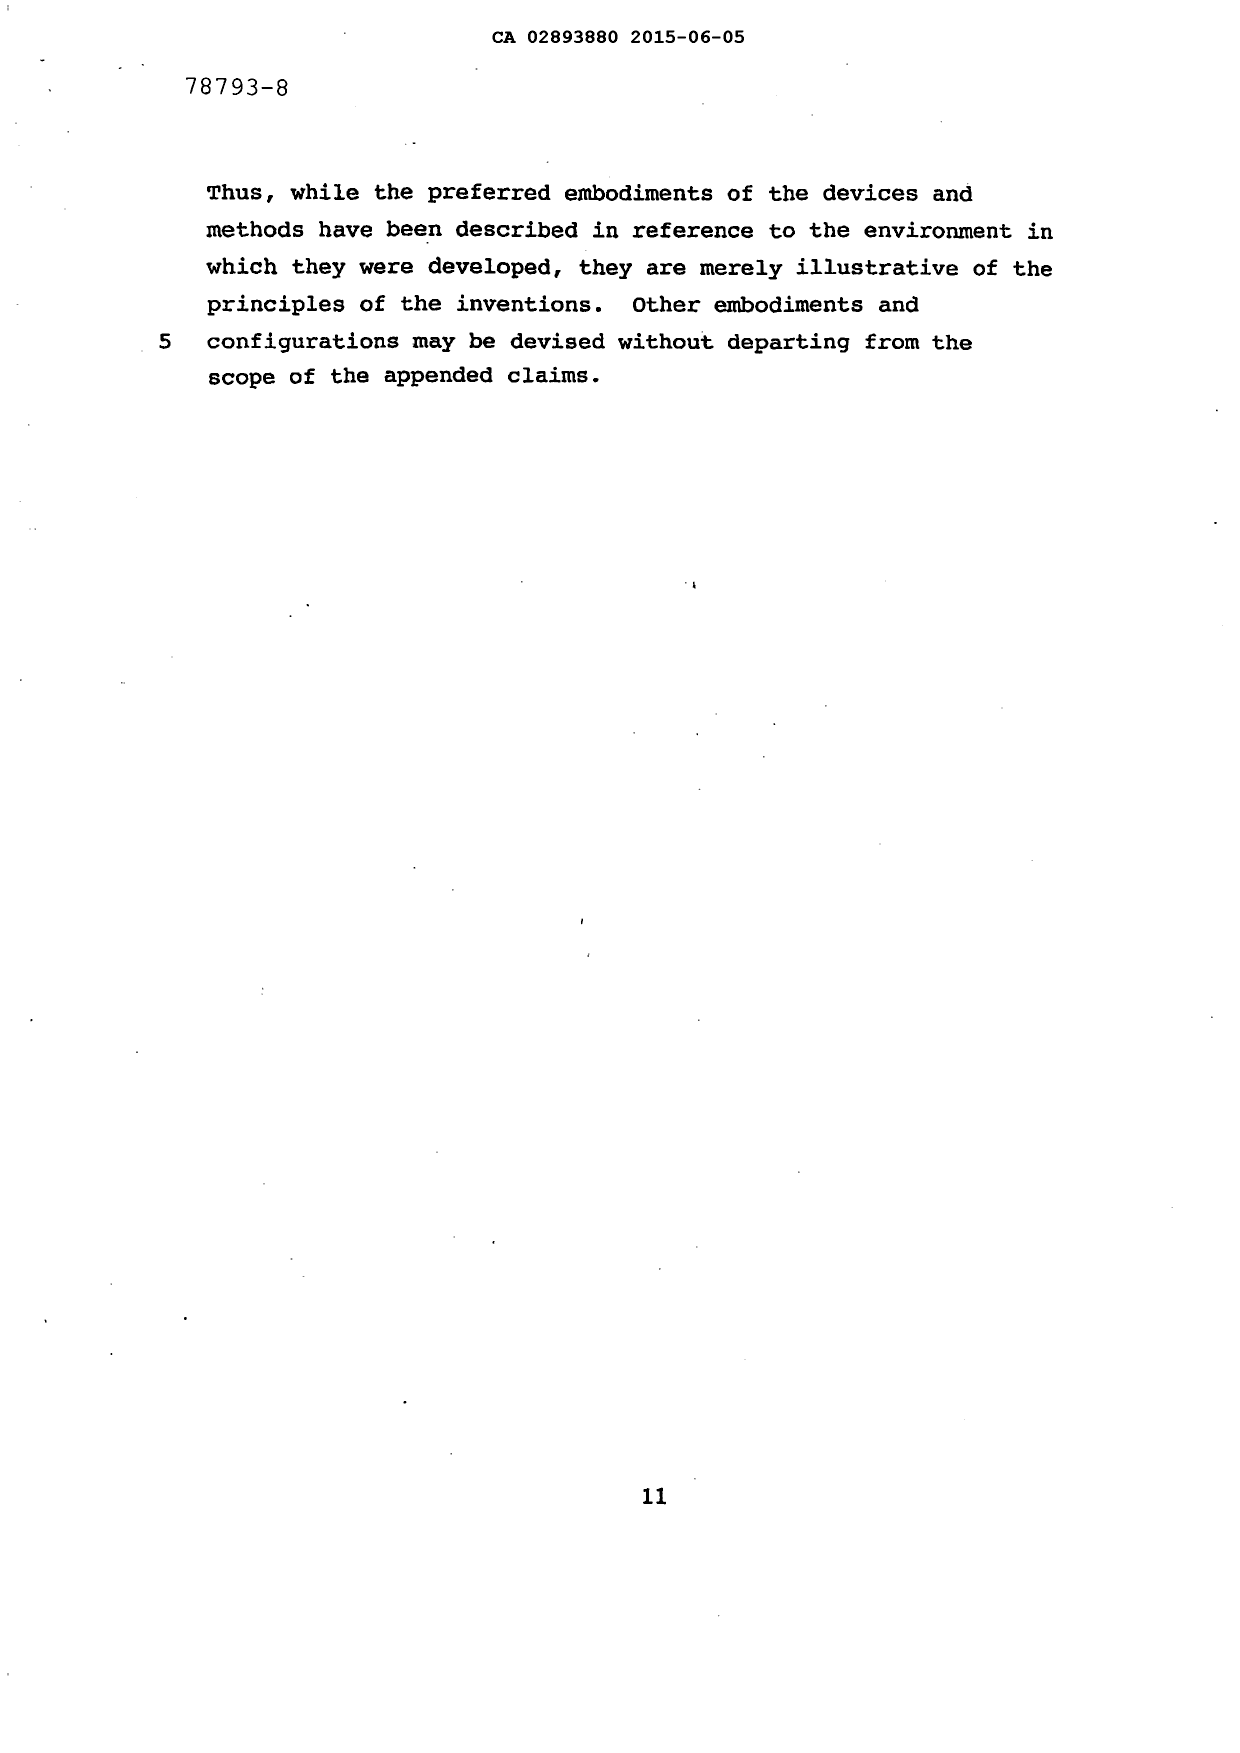 Document de brevet canadien 2893880. Description 20141205. Image 15 de 15